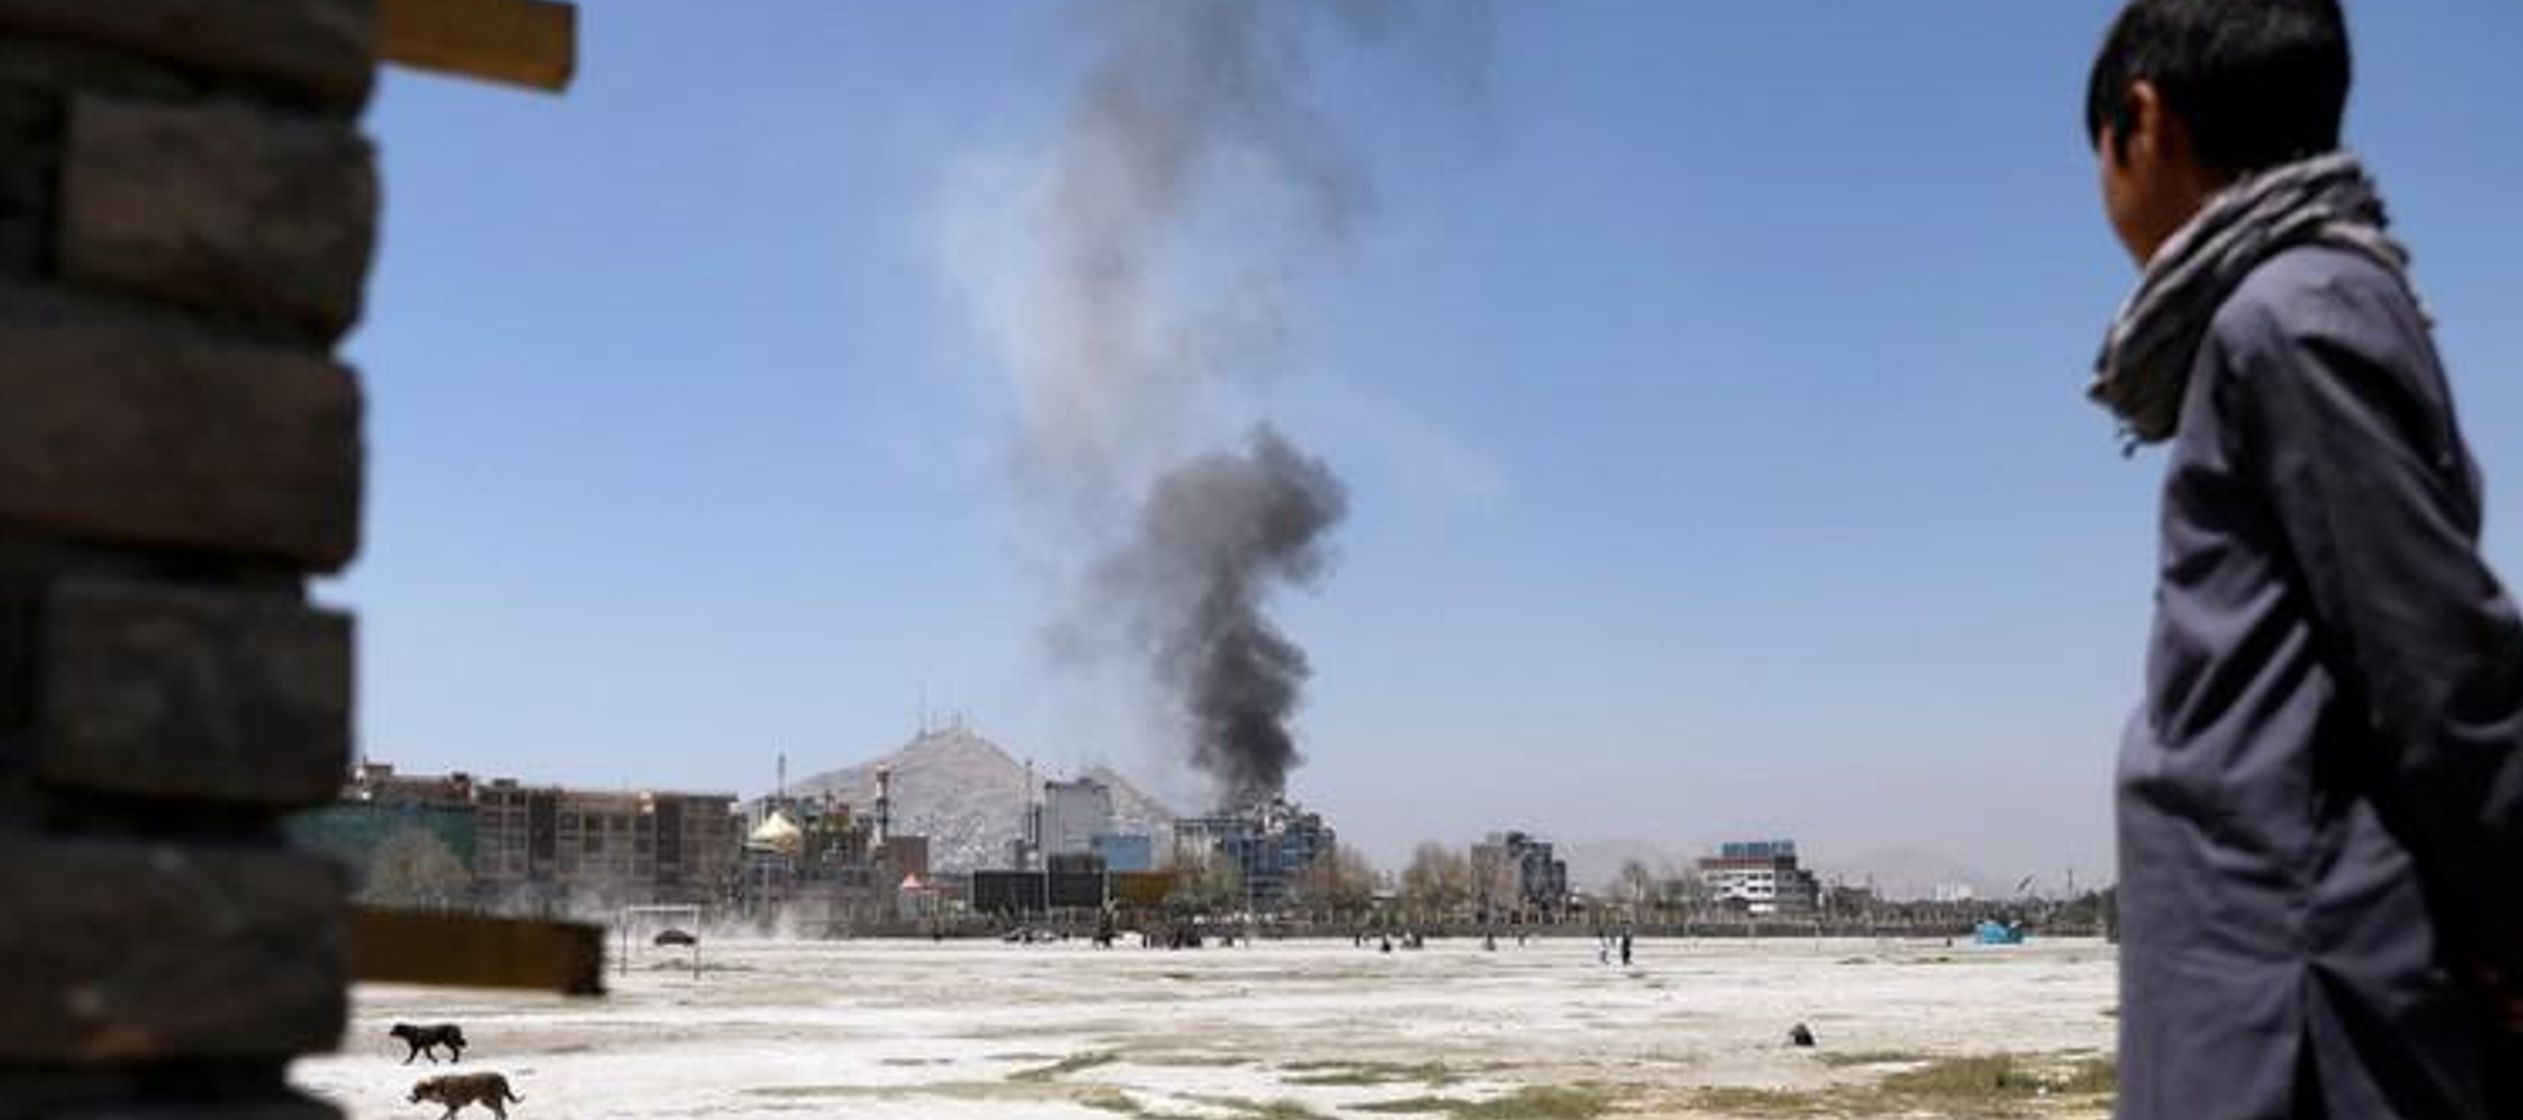 Imagen de archivo de una persona observando una columna de humo tras un ataque en Kabul, ago 21,...